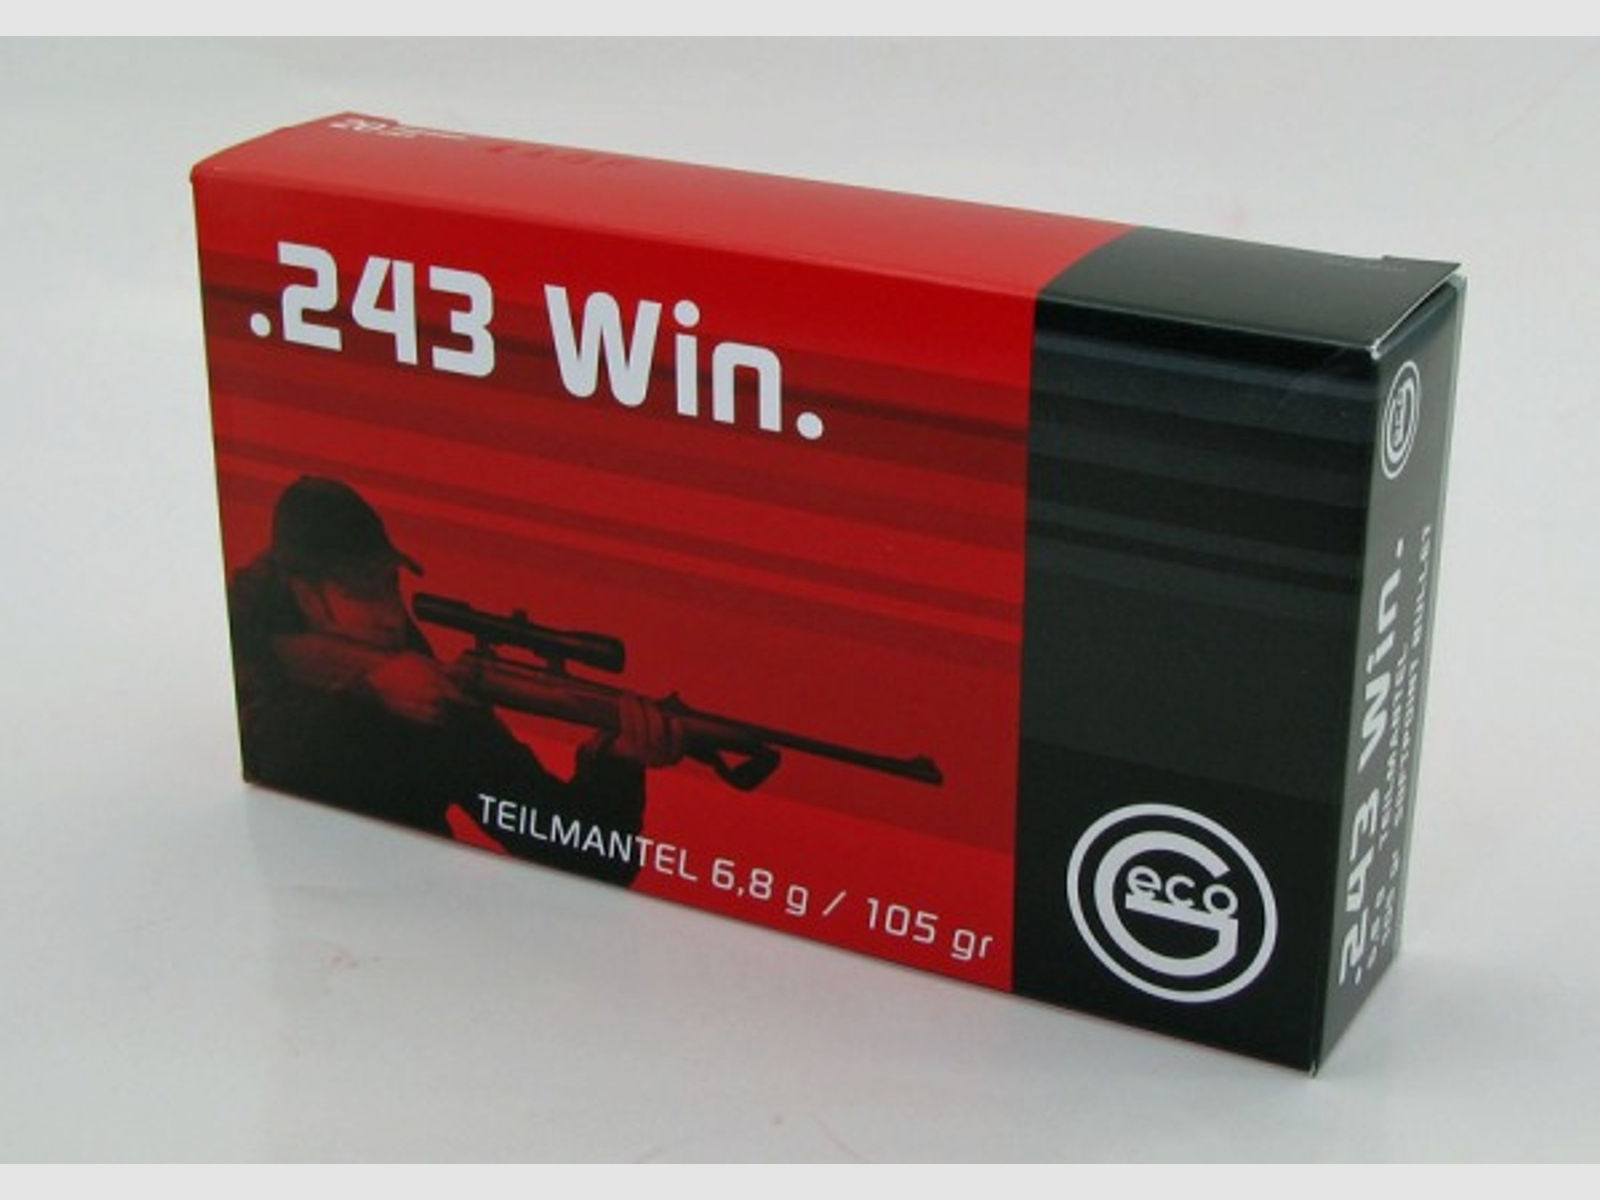 Geco 243 Win Teilmantel 20 Schuss